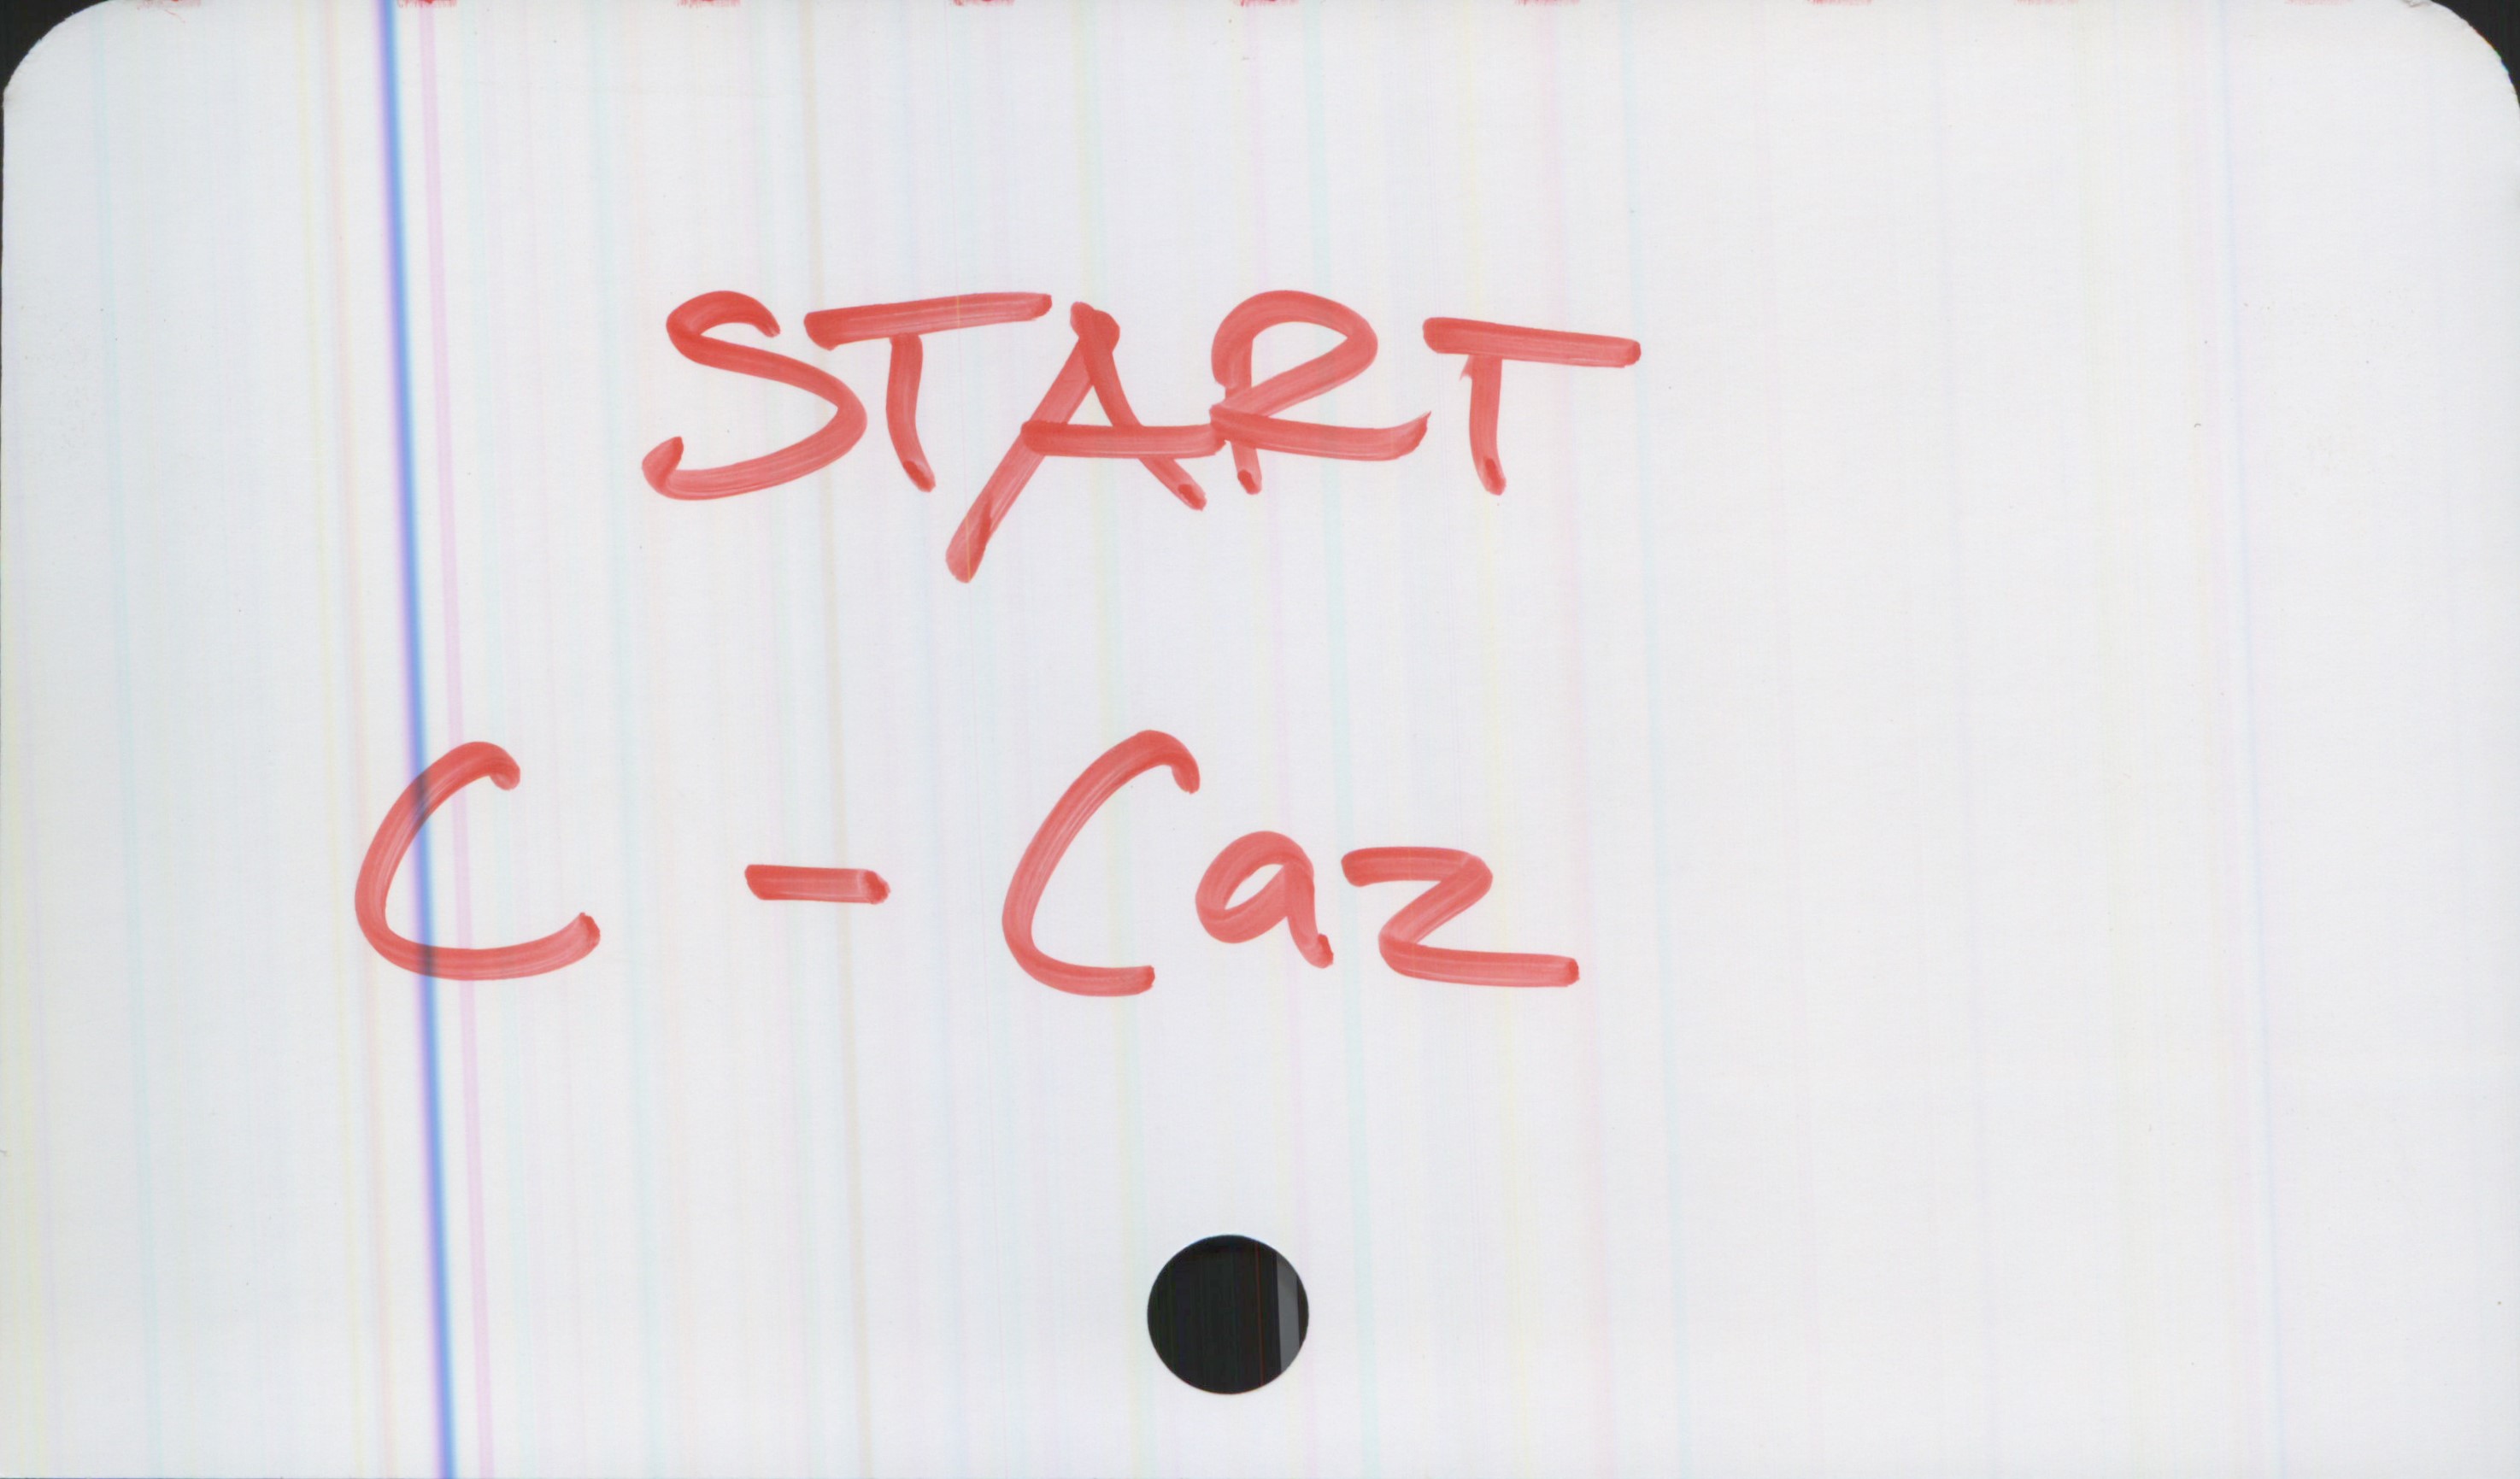 START C-Caz START
C-Caz